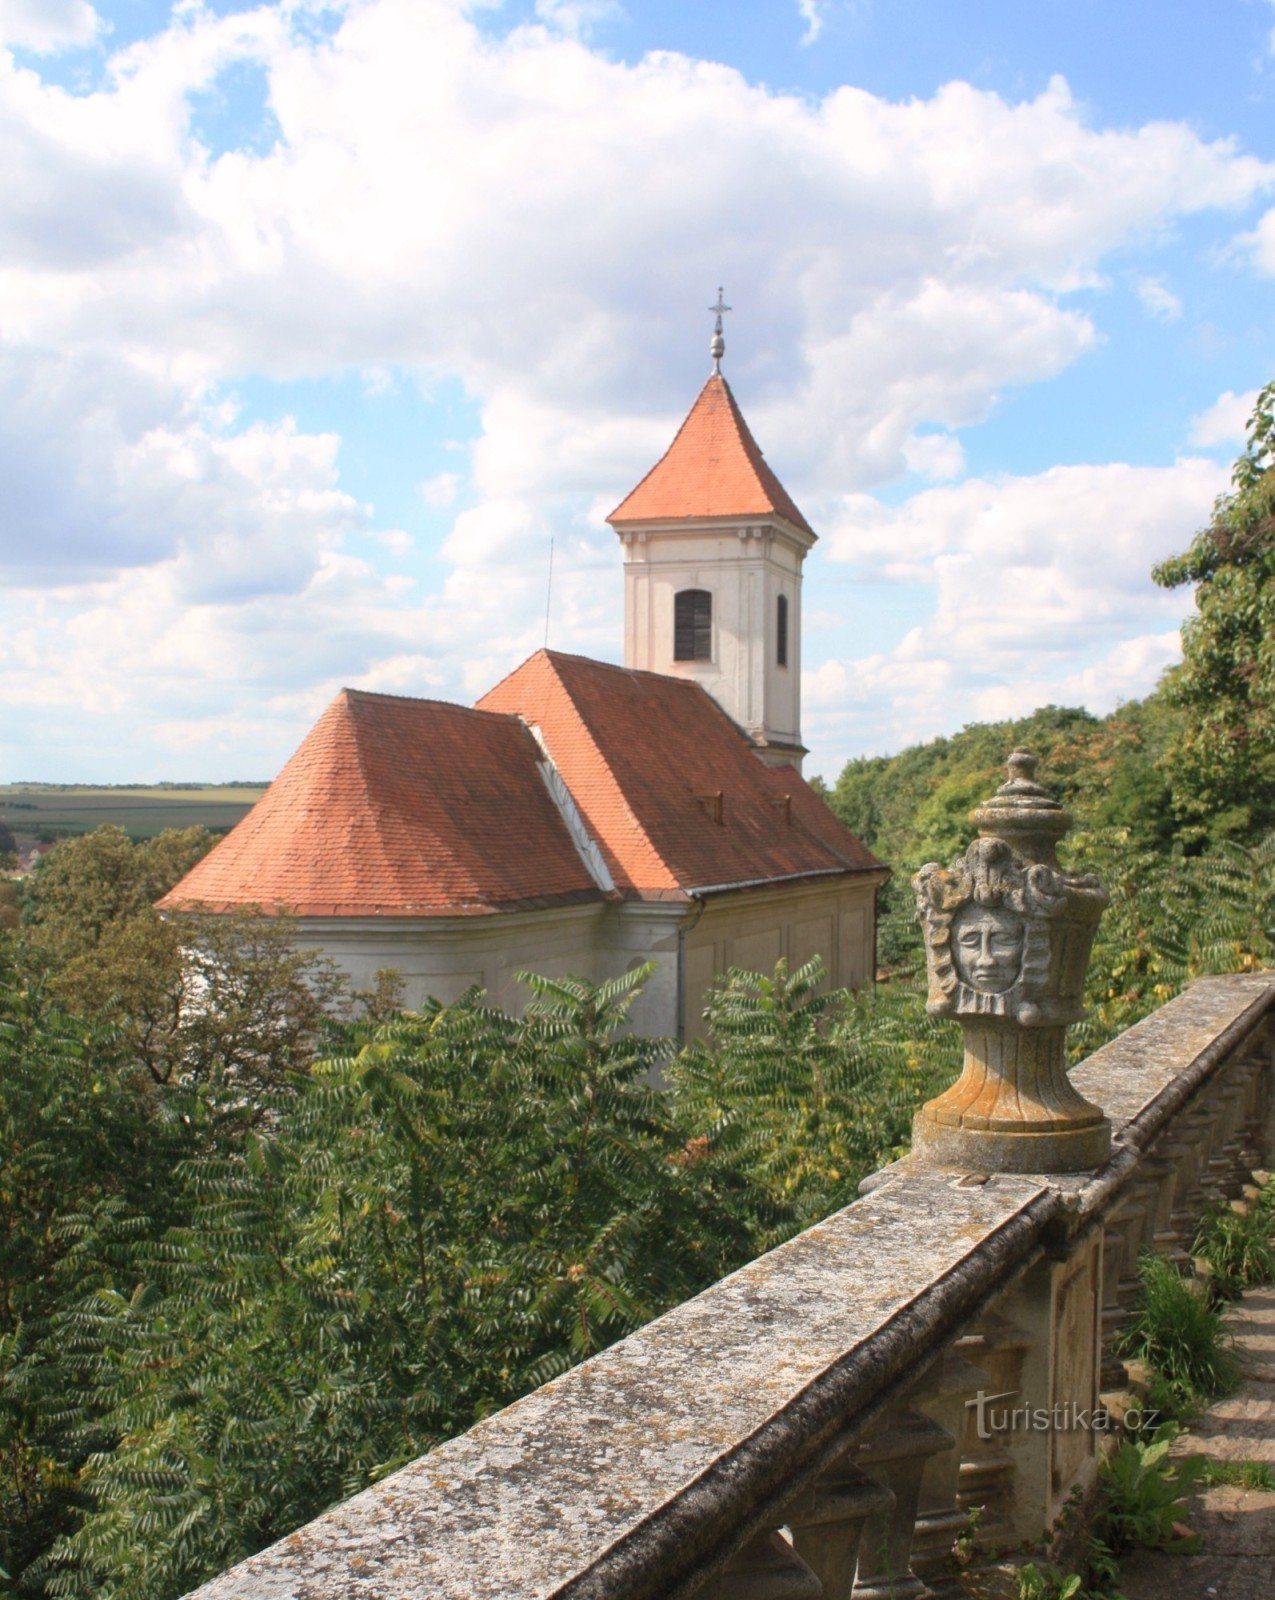 Vista de la iglesia de St. Lirio de los valles desde la terraza del castillo